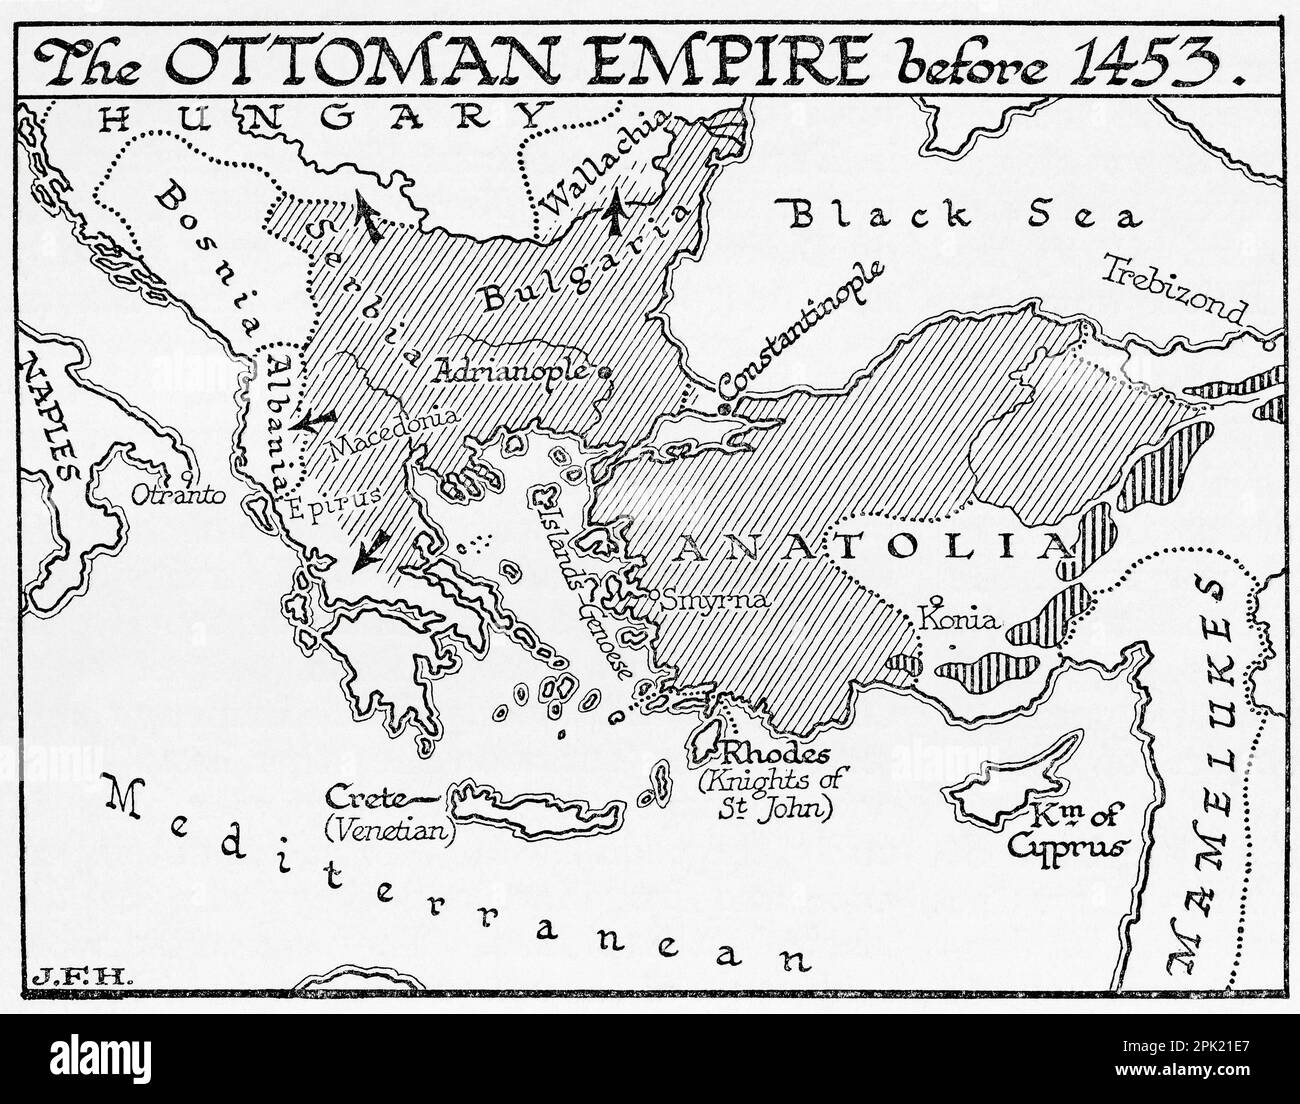 Mappa dell'Impero Ottomano prima del 1453. Dal libro Outline of History di H.G. Wells, pubblicato nel 1920. Foto Stock